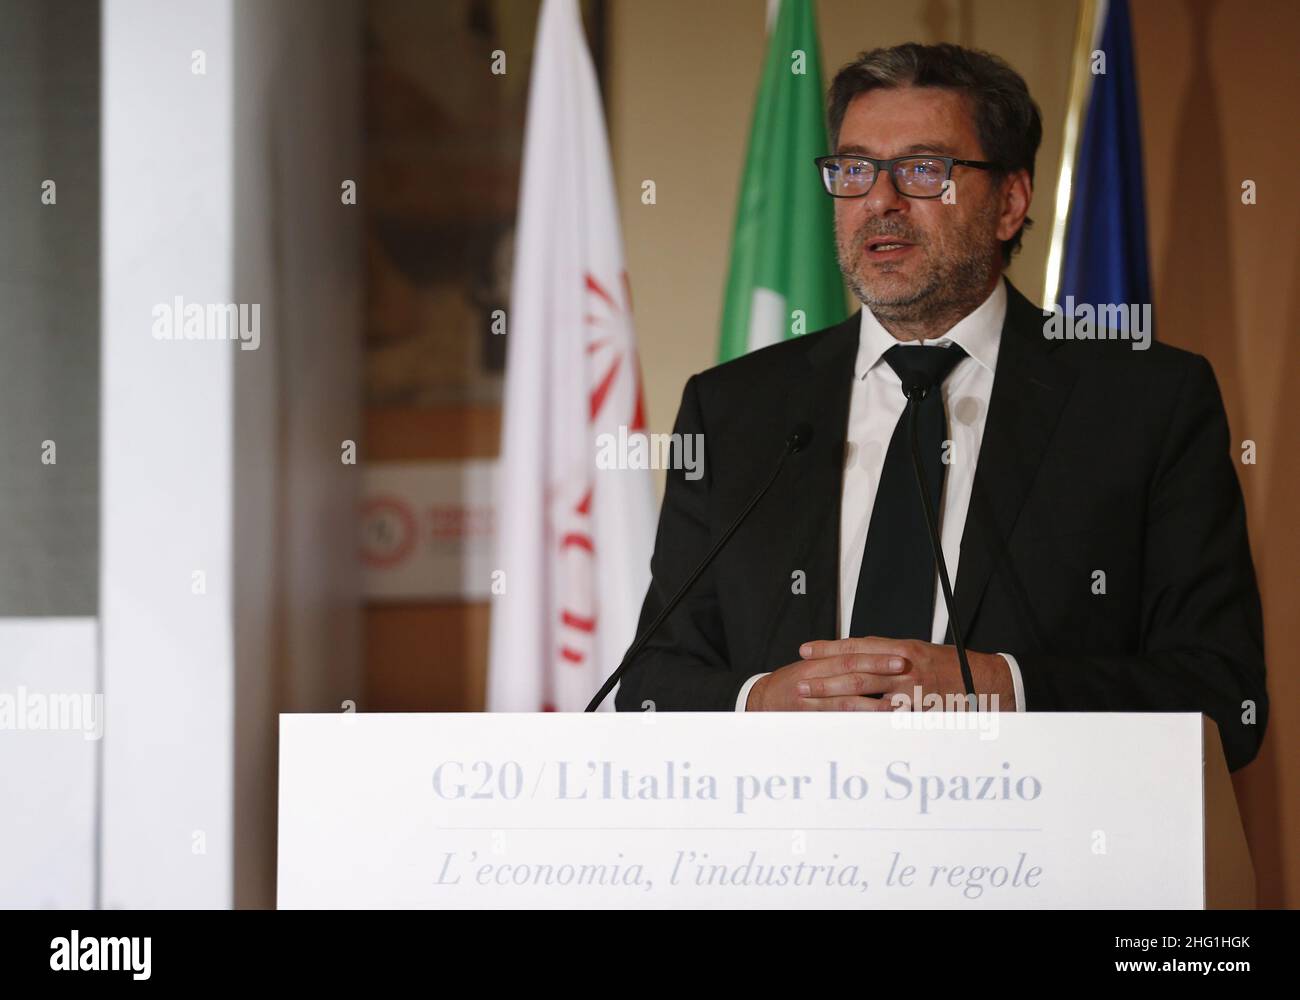 Cecilia Fabiano/ LaPresse 21 de septiembre de 2021 Roma (Italia) Noticias : G20 , Italia por el Espacio en el Pic : Giancarlo Giorgetti Foto de stock